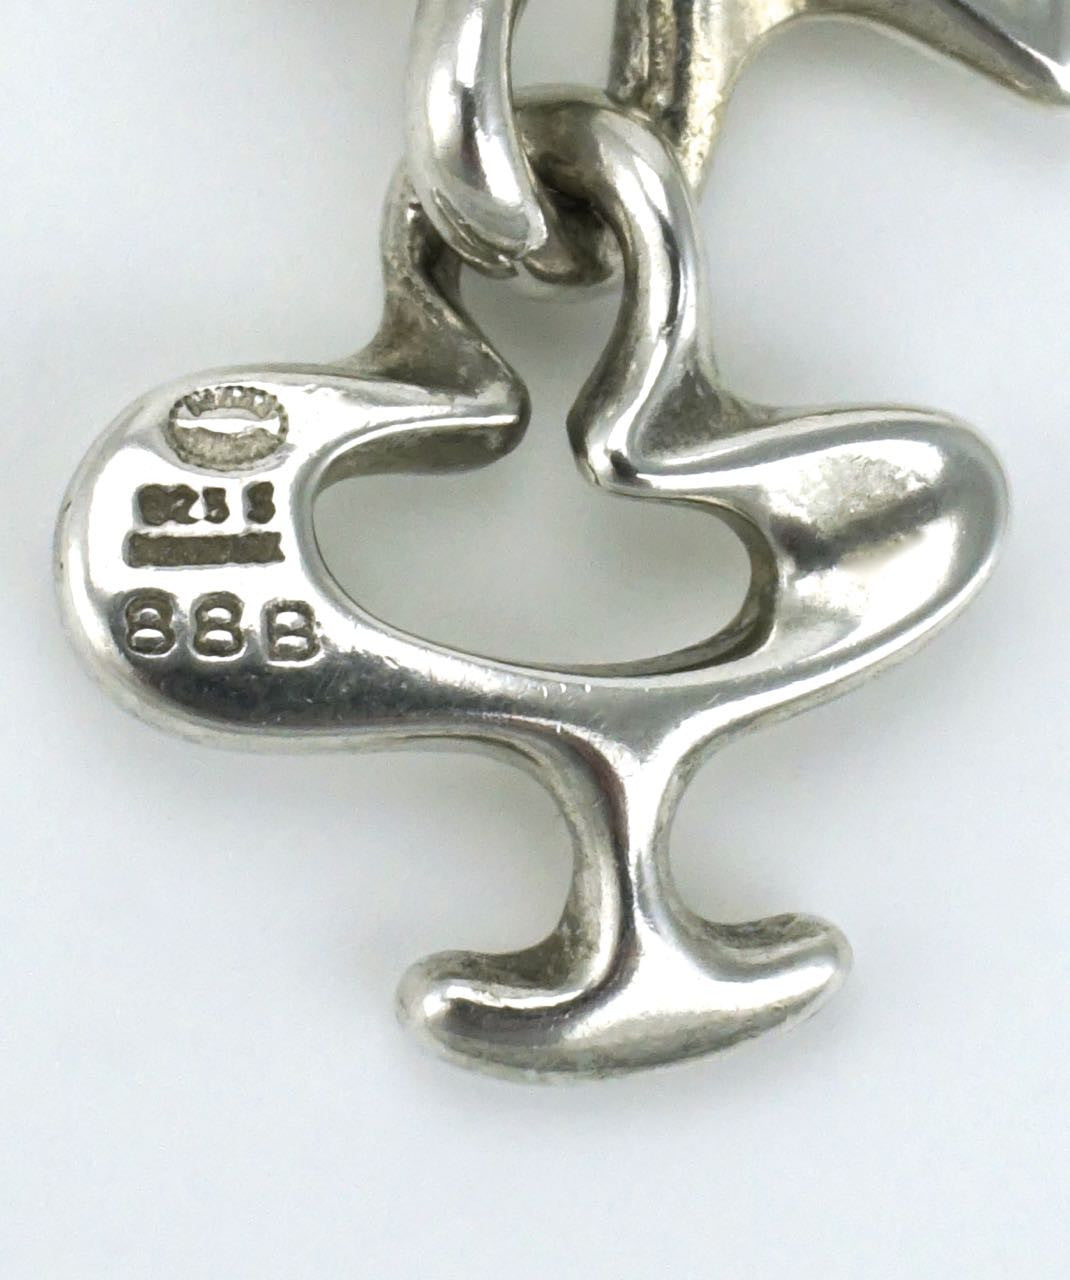 Georg Jensen silver splash bracelet - design 88B Henning Koppel